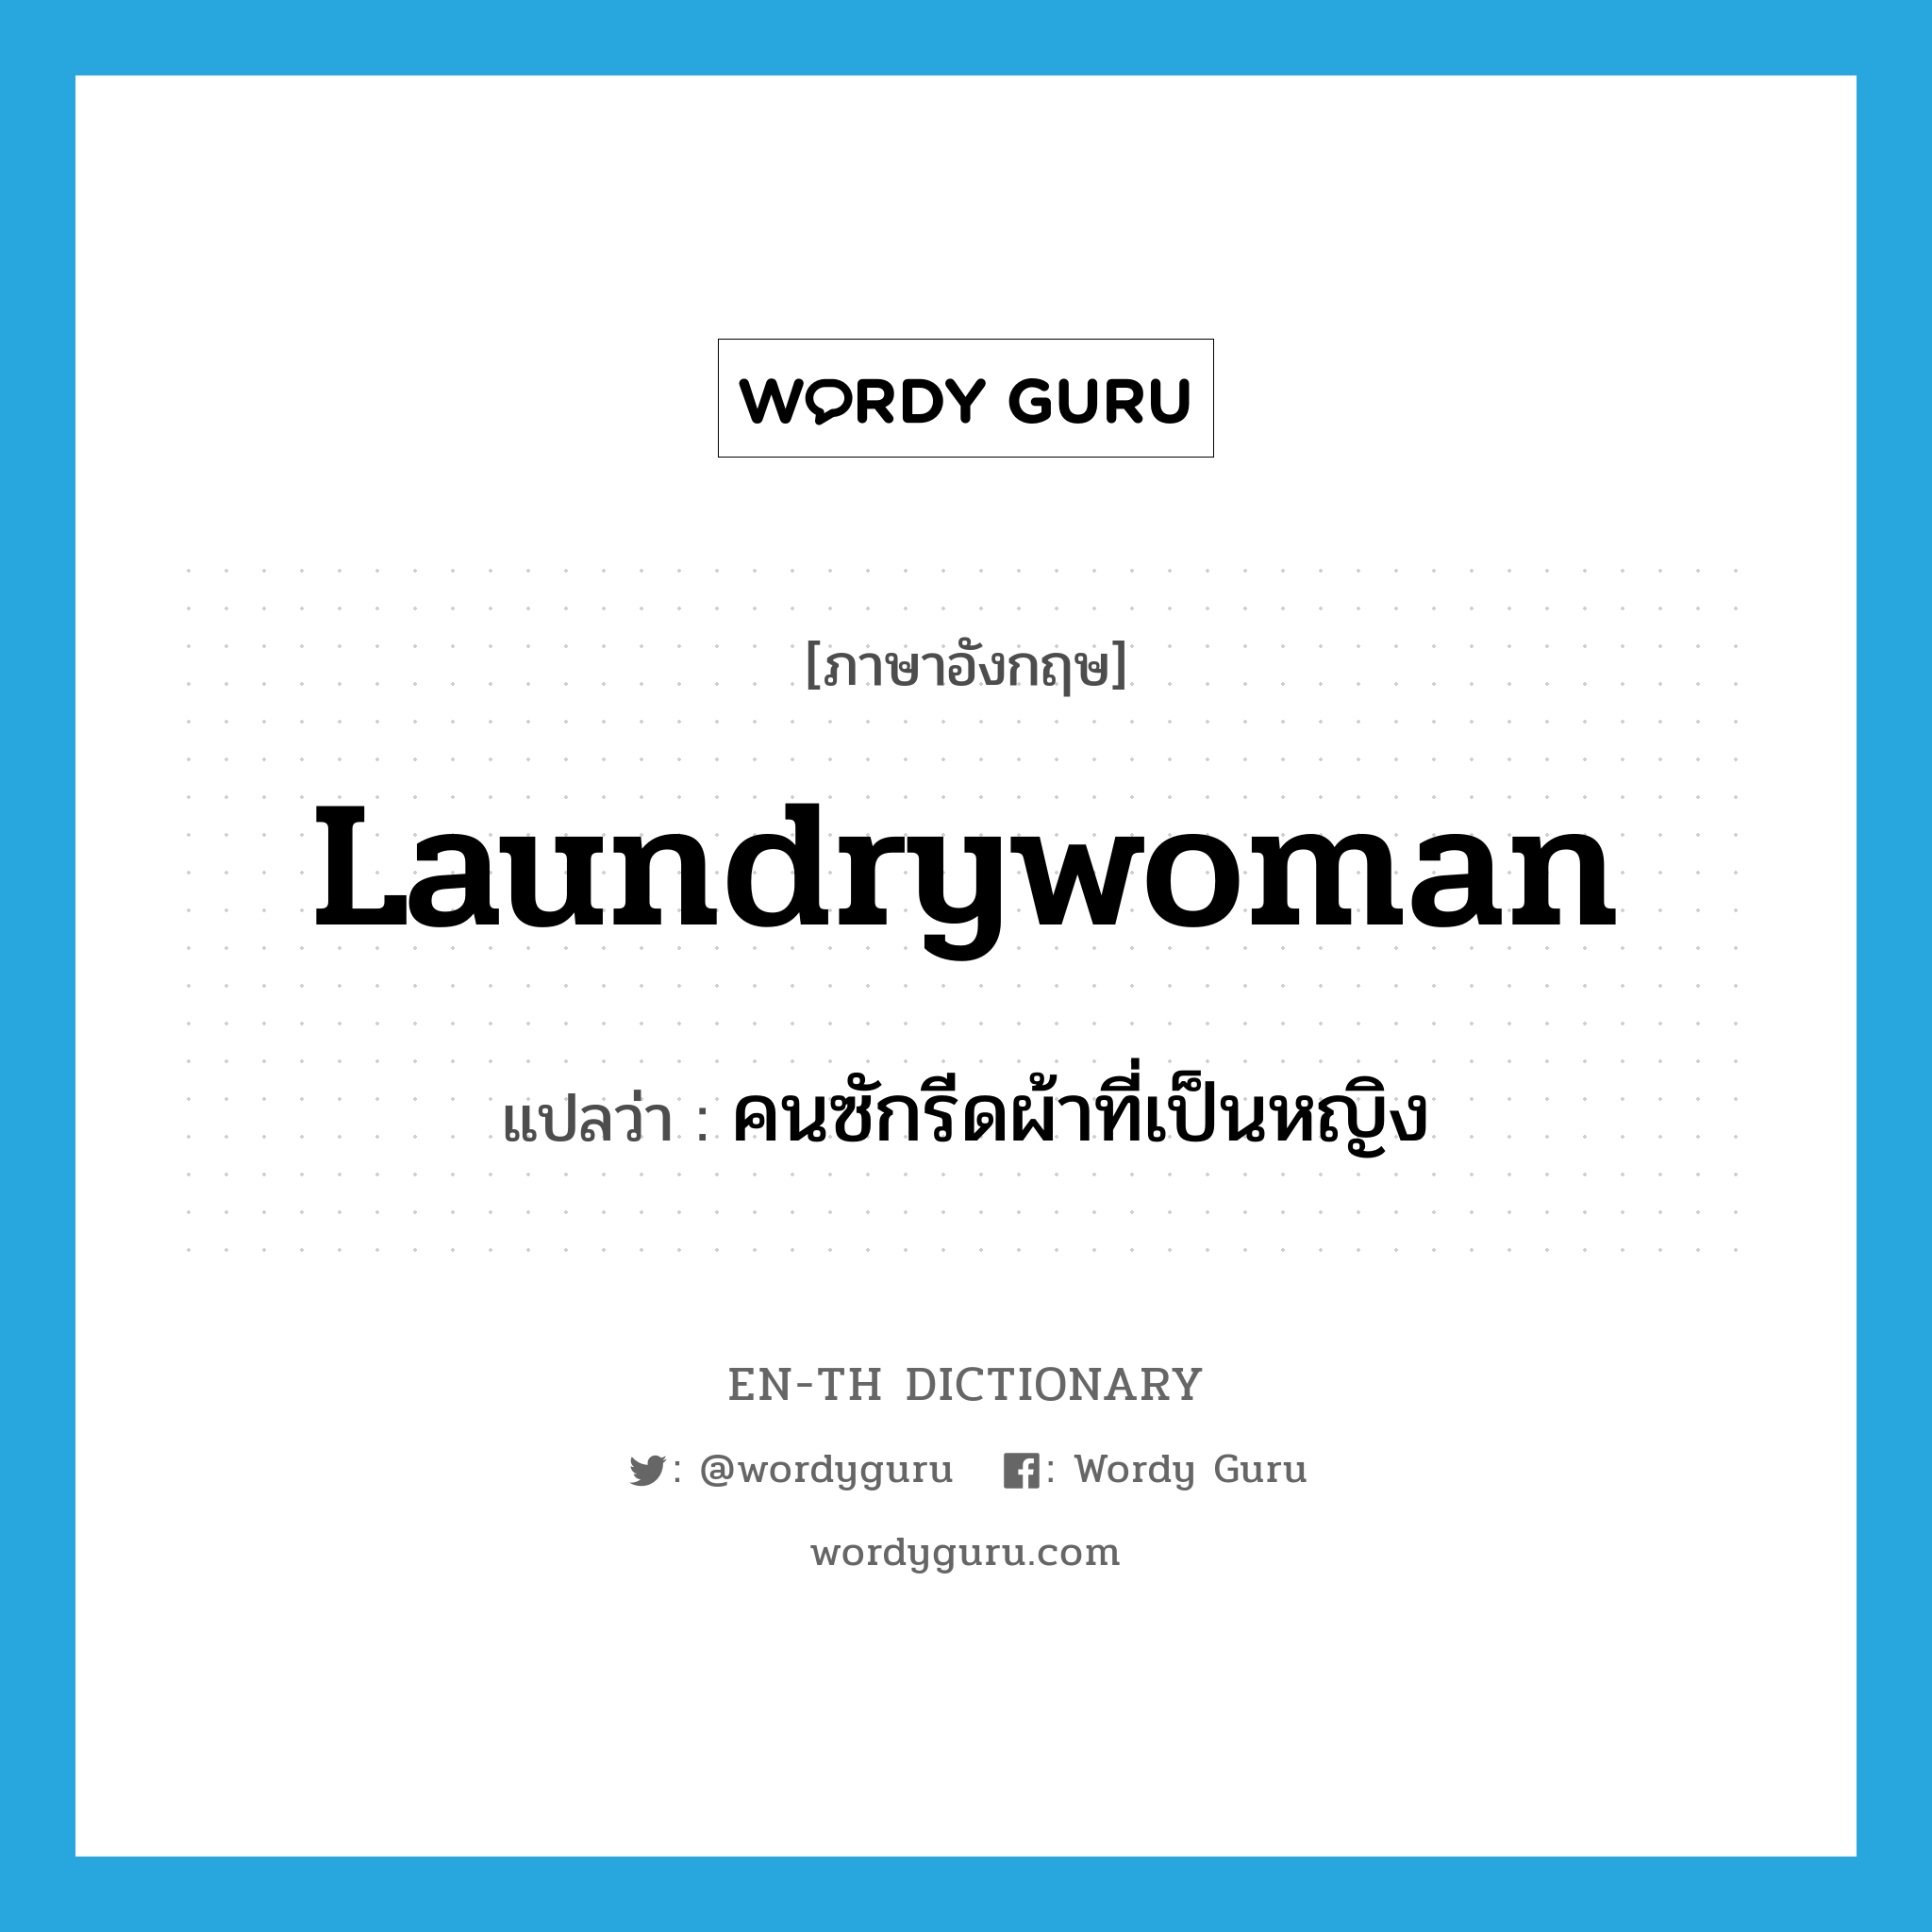 laundrywoman แปลว่า?, คำศัพท์ภาษาอังกฤษ laundrywoman แปลว่า คนซักรีดผ้าที่เป็นหญิง ประเภท N หมวด N